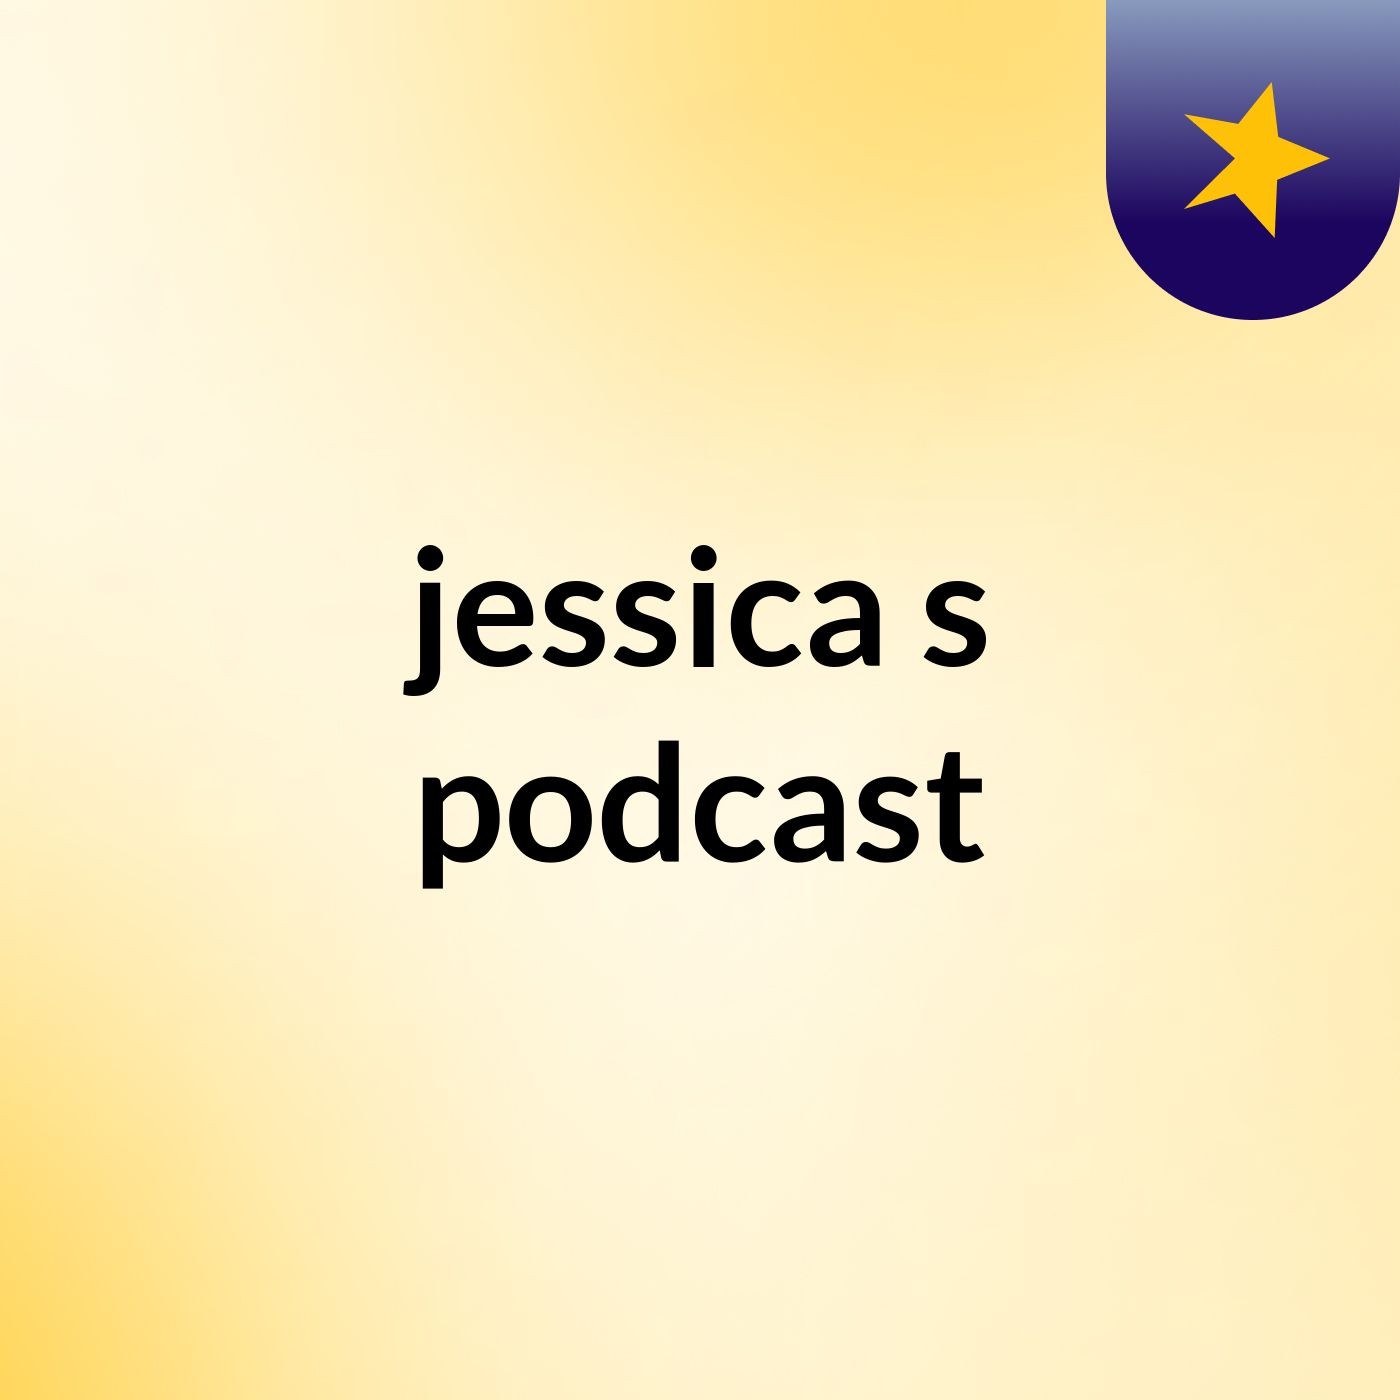 jessica's podcast